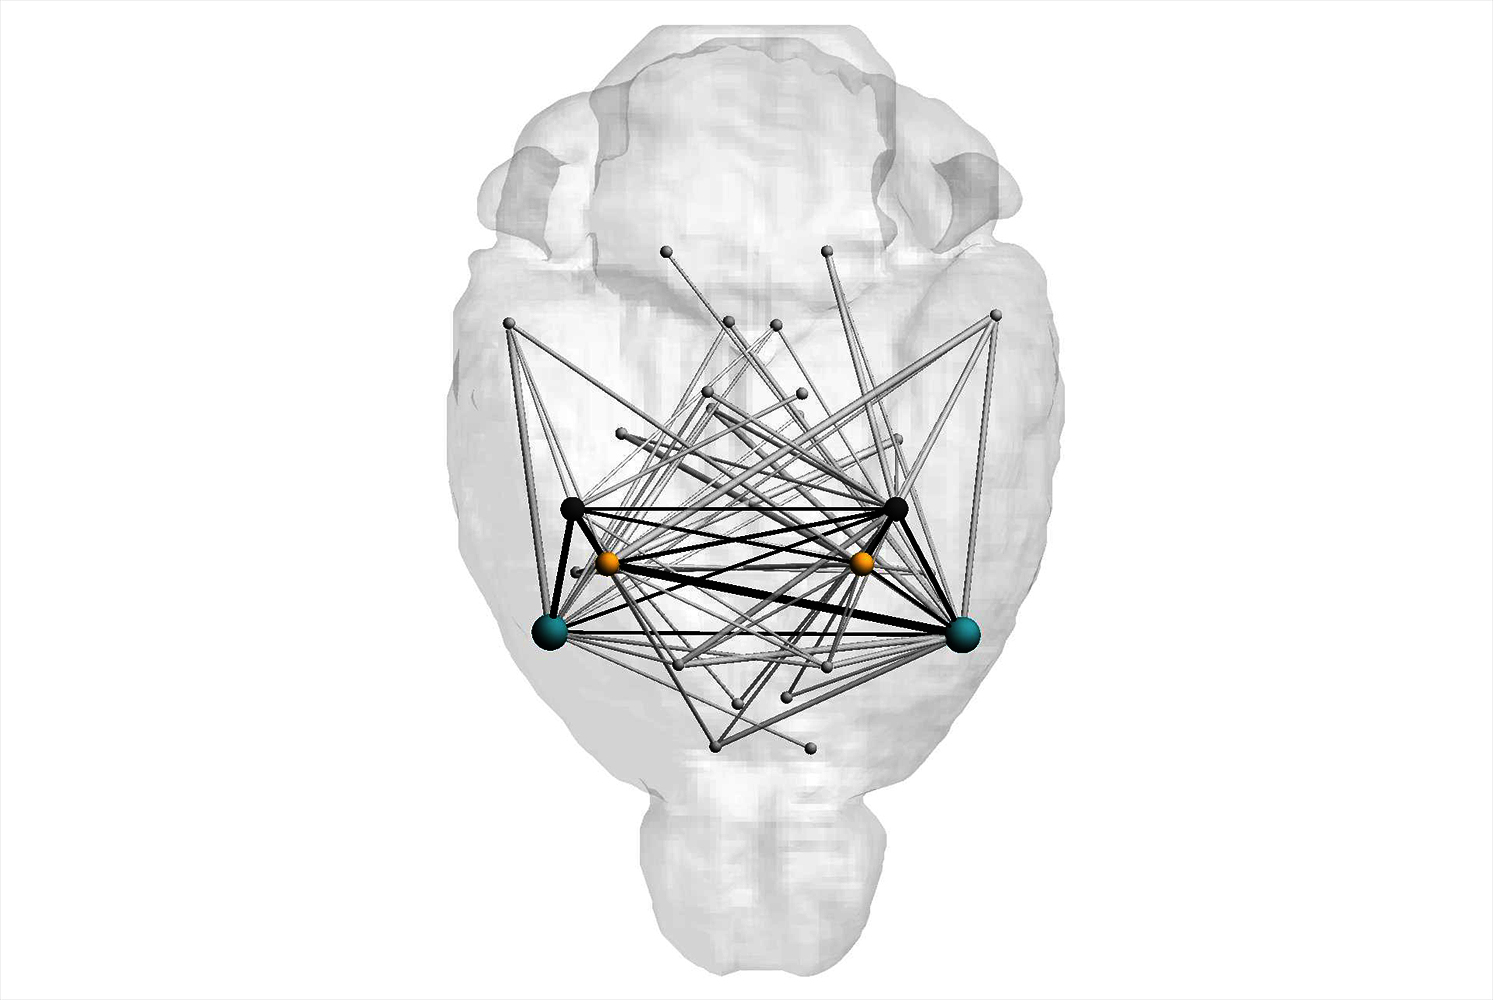 Zu sehen ist in hellem grau die Skizze eines Gehirns und darin visualisiert sind in bunten Querverbindungen die neuronalen Schleifen, die das Bauchgefühl konstituieren.